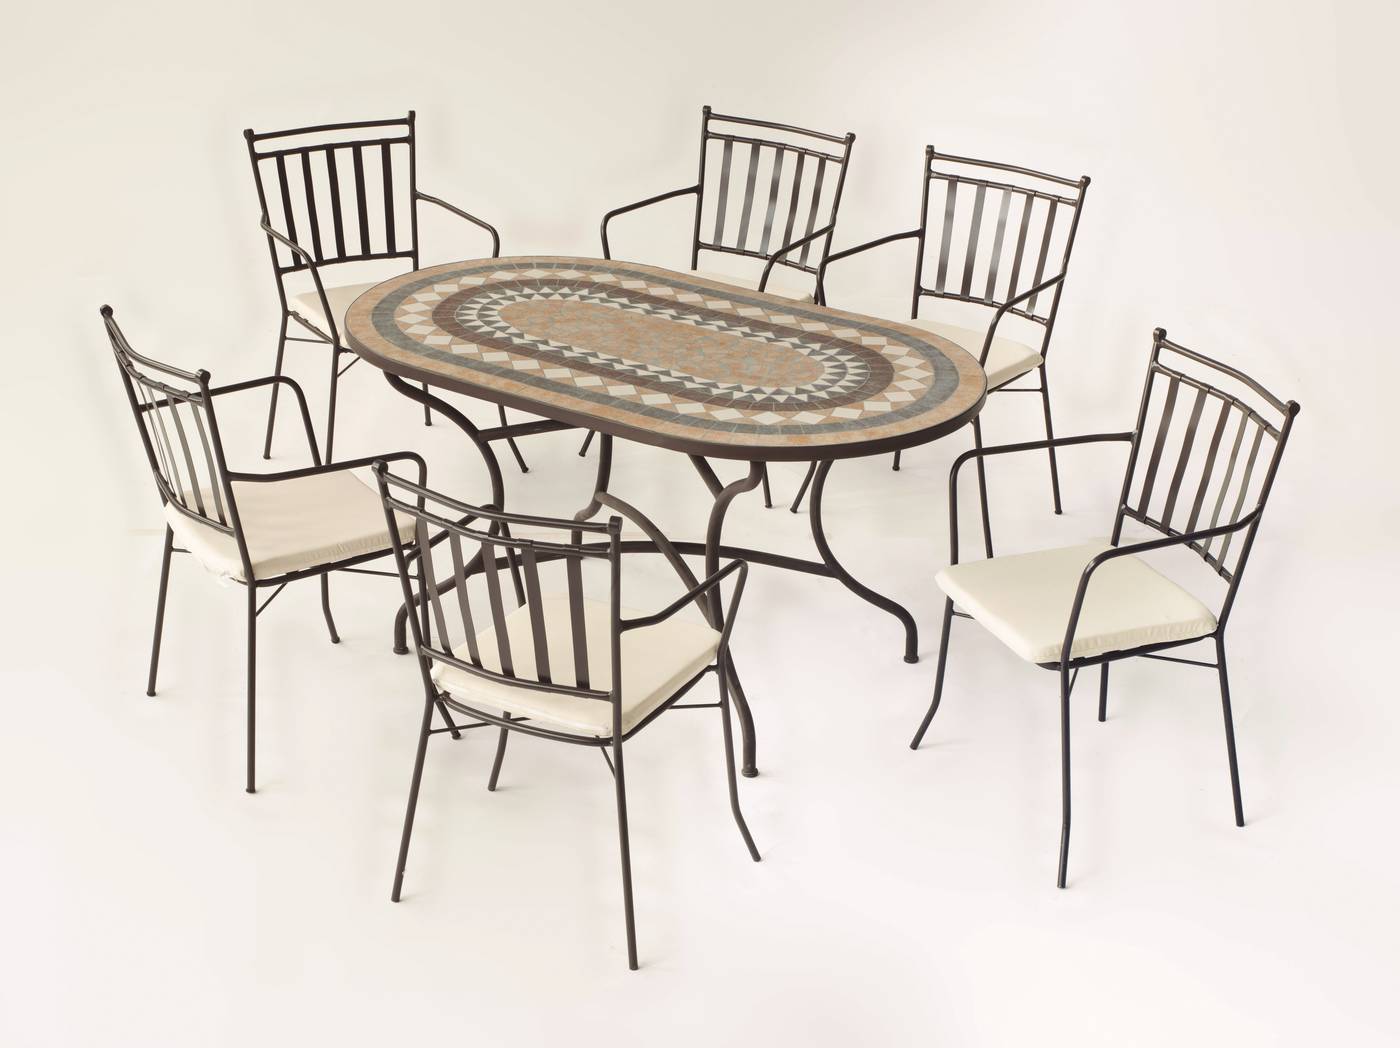 Conjunto de forja color bronce: mesa con tablero ovalado mosaico de 150 cm + 4 sillones con cojines.<br/><br/><b>OFERTA VÁLIDA HASTA EL 31 DE MAYO O FIN DE EXISTENCIAS</b>.